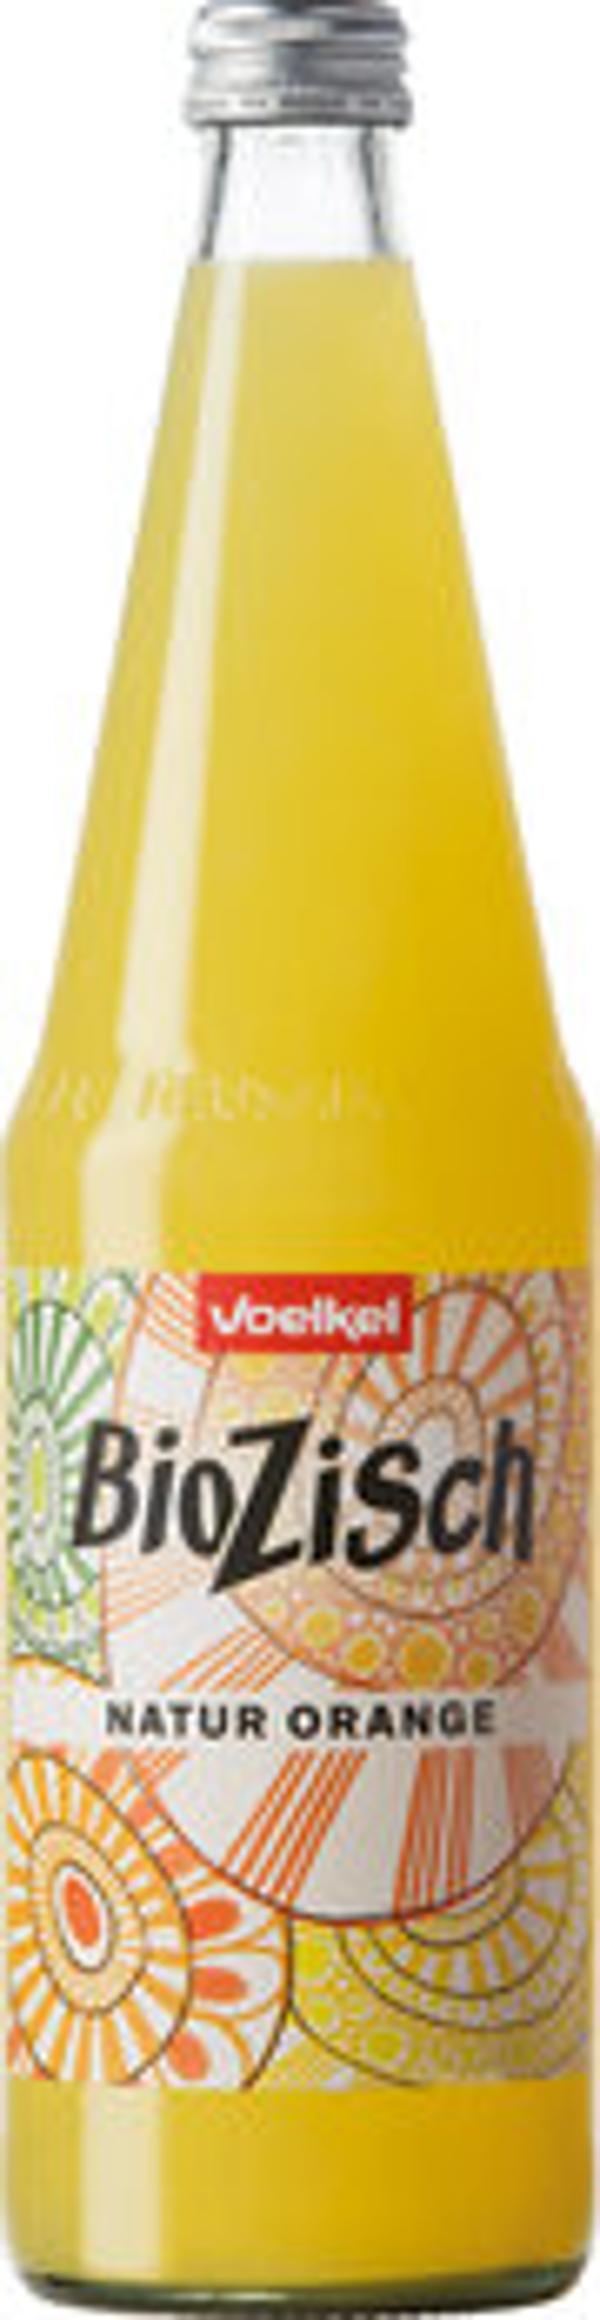 Produktfoto zu Voelkel Bio Zisch Orange 0,7l